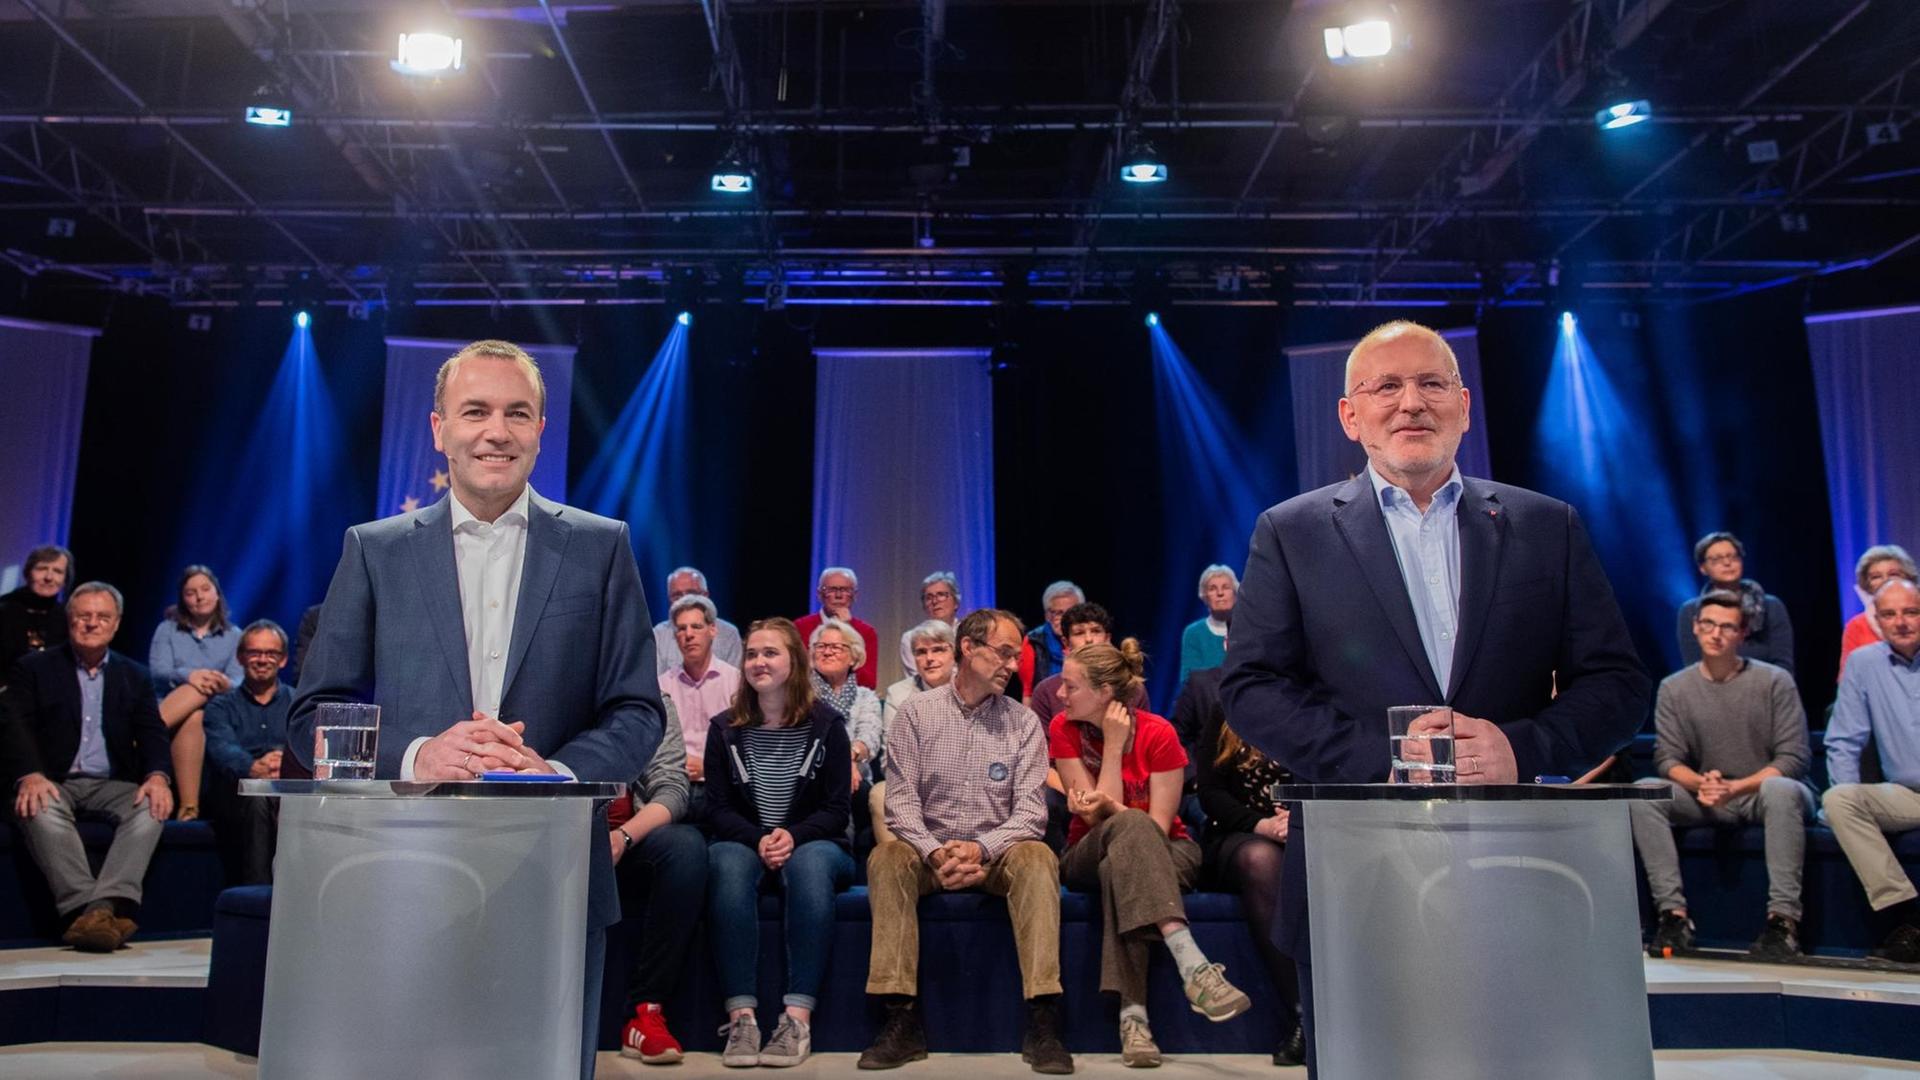 Das Bild zeigt Manfred Weber und Frans Timmermans, Sie stehen während einer Fernsehdebatte hinter Pulten.